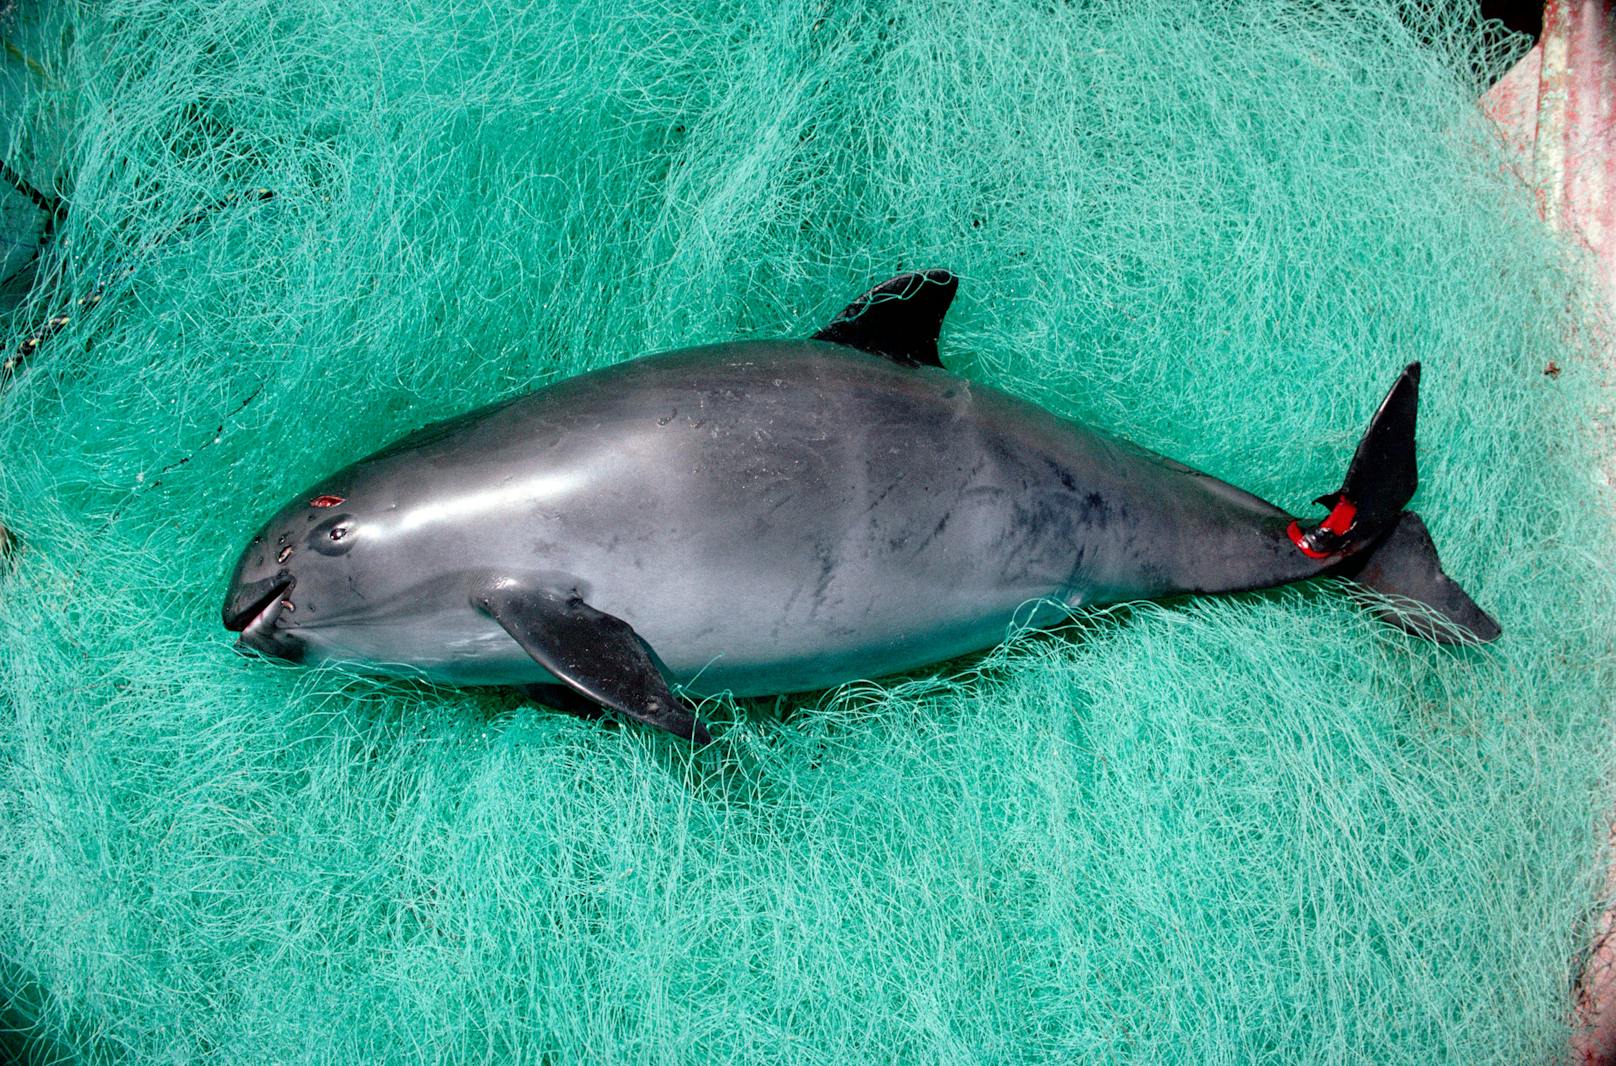 Über eine Million Wale, Delfine, Robben und Seevögel verenden jedes Jahr "als Kollateralschaden der kommerziellen Fischerei", wie ein neuer Bericht der Umweltschutzorganisation WWF zeigt.